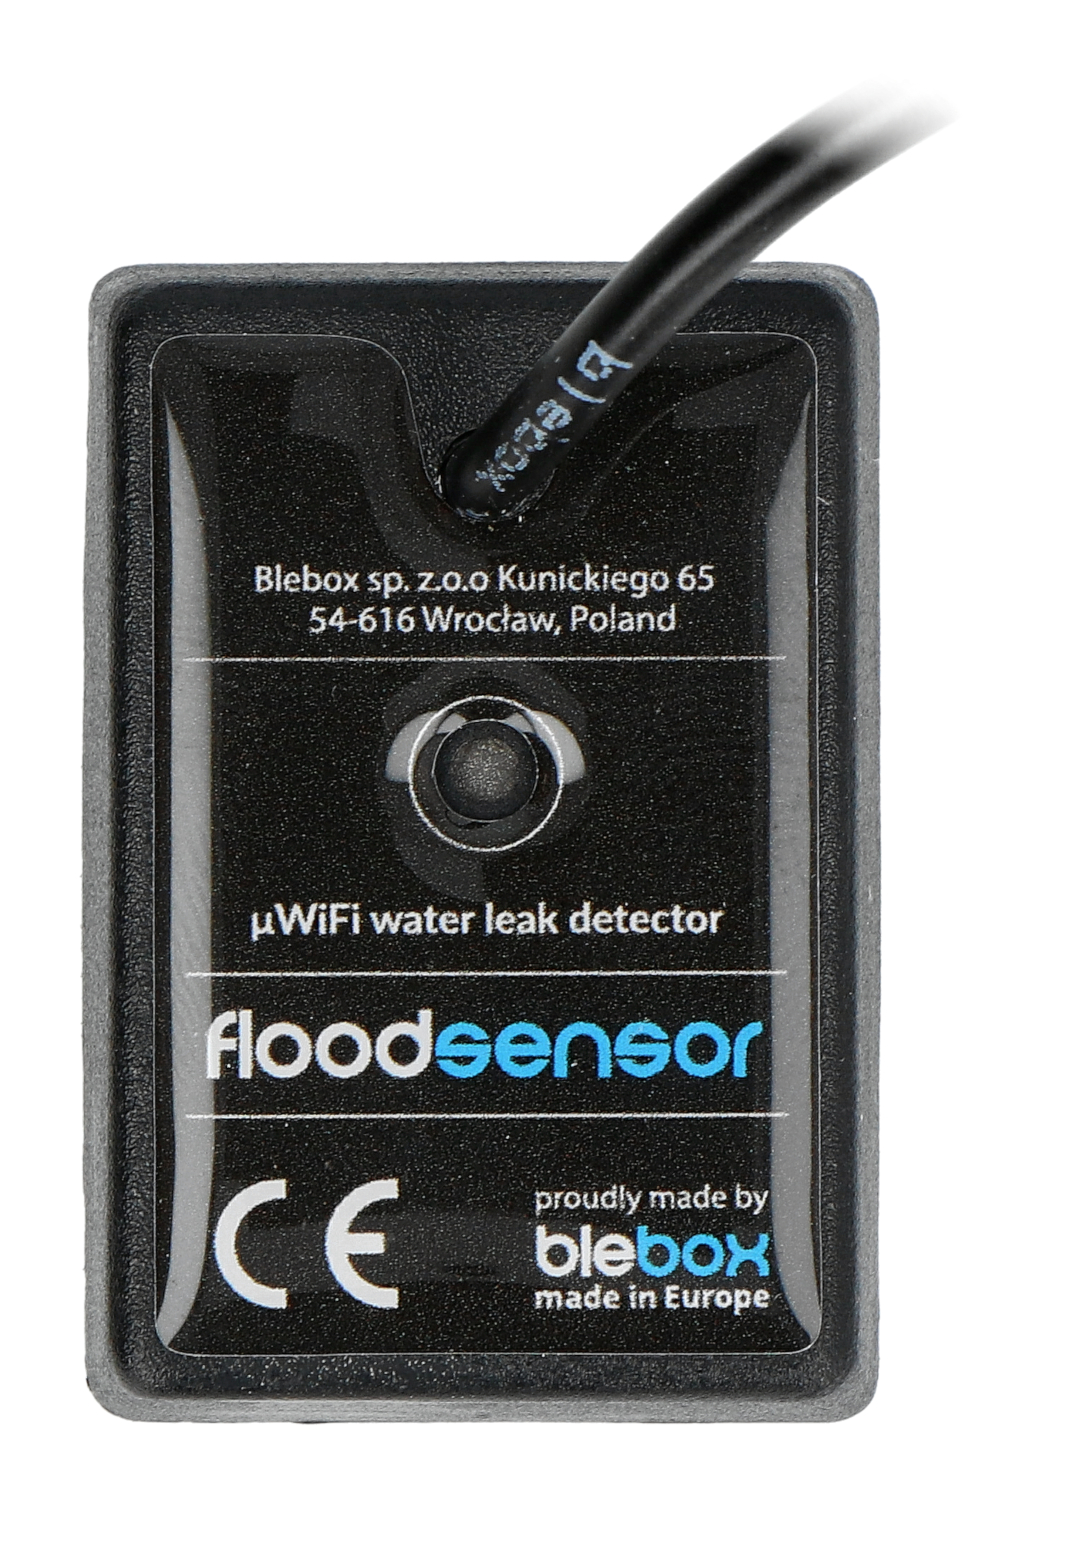 Wasserstand Sensor einfach erklärt!